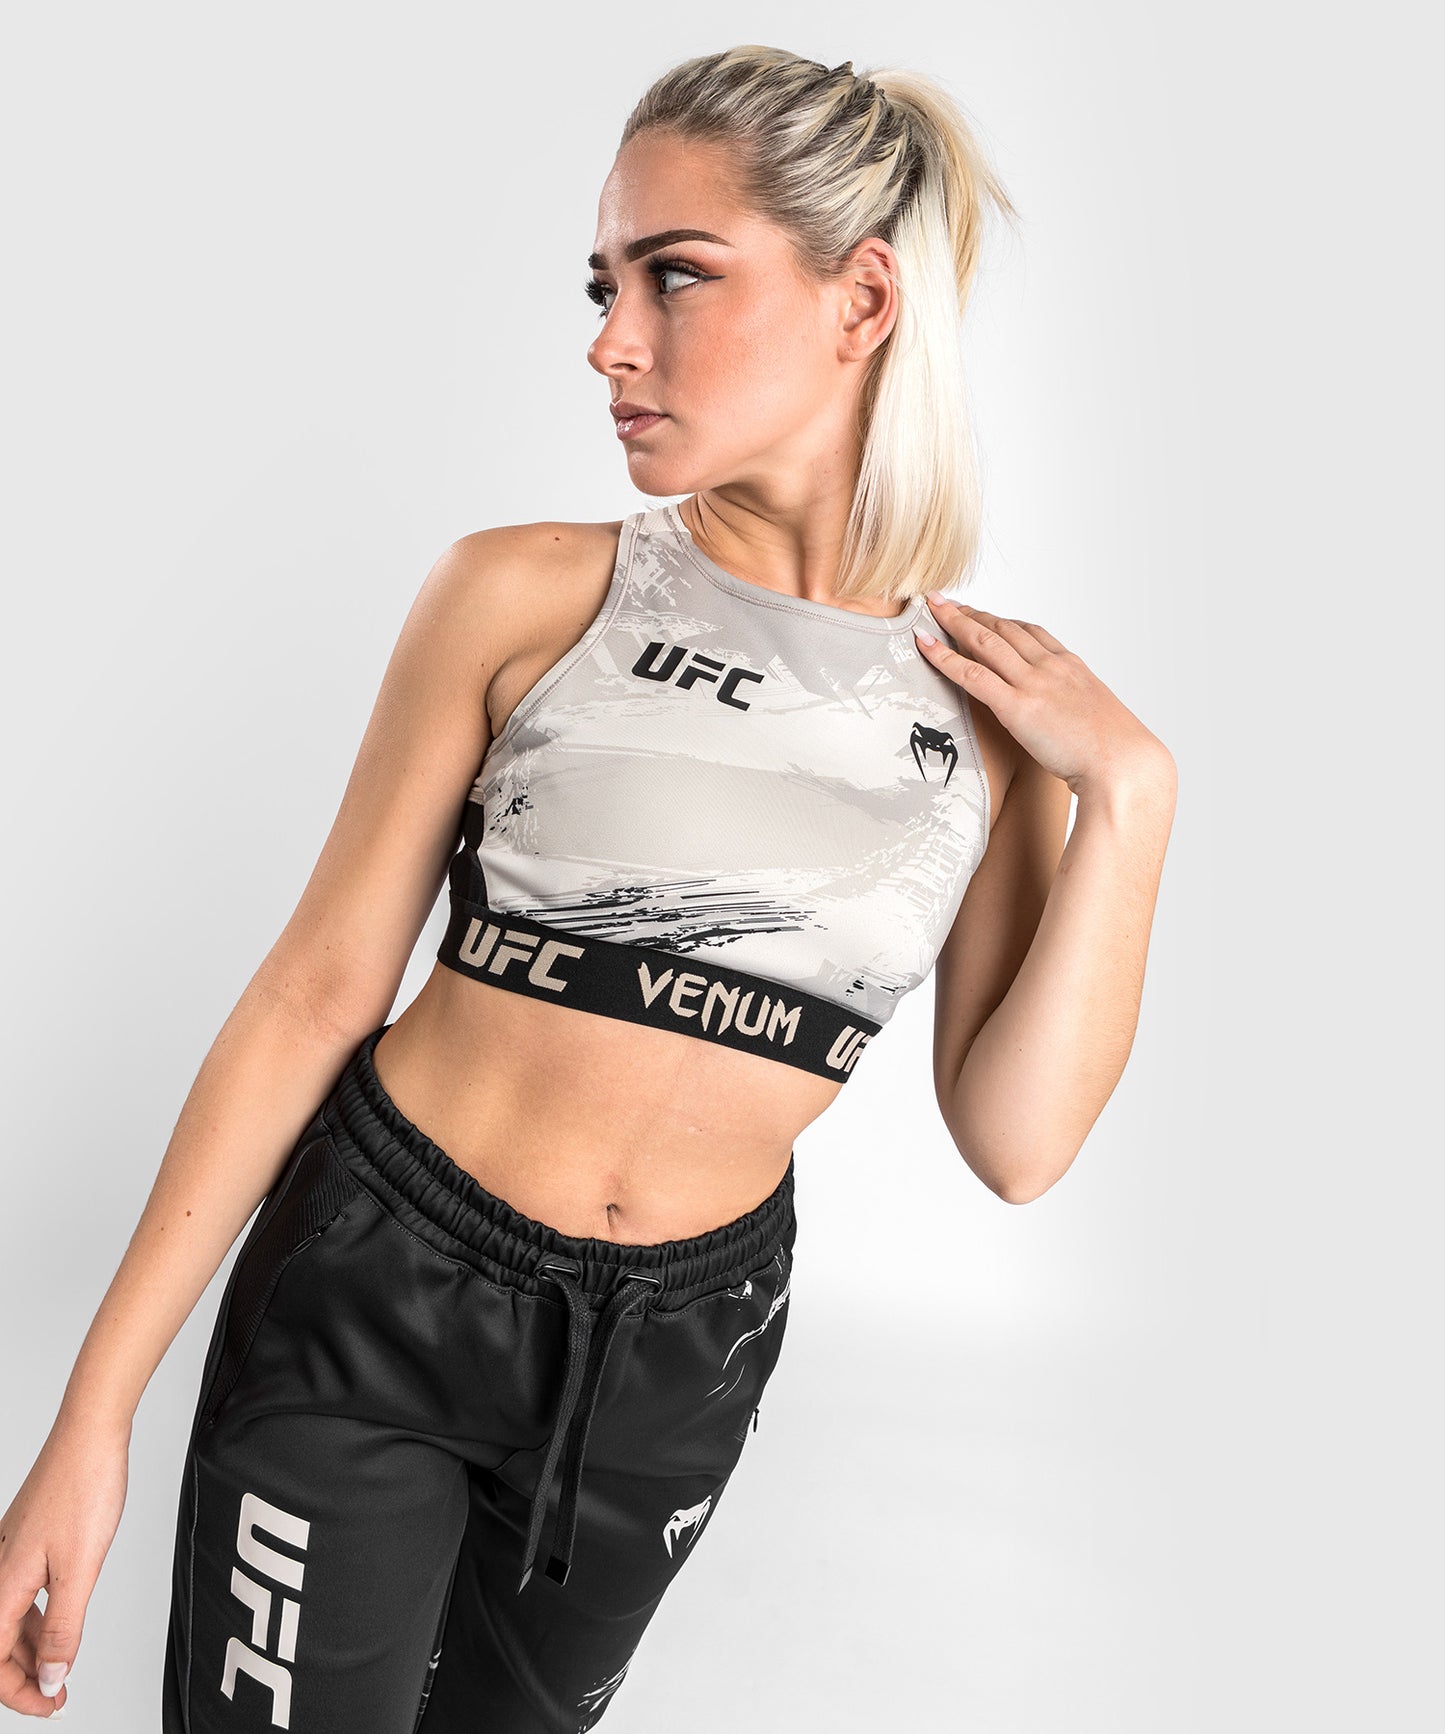 UFC Venum Authentic Fight Week Women’s 2.0 Weigh-in Bra - Sand/Black